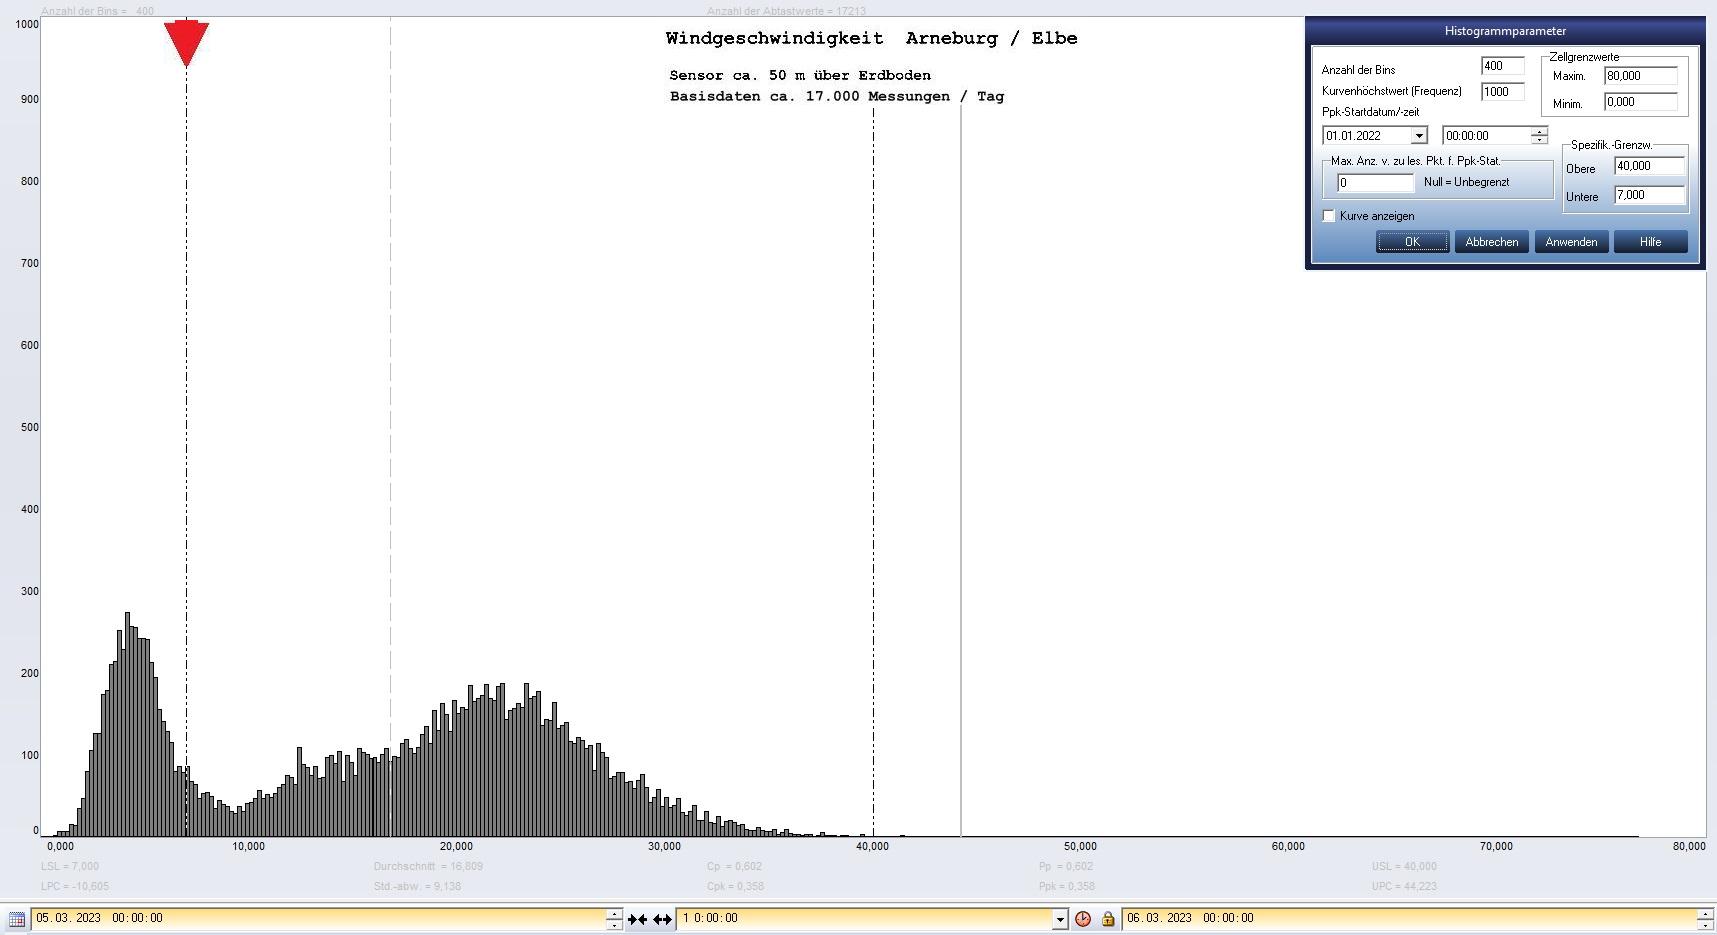 Arneburg Tages-Histogramm Winddaten, 05.03.2023
  Histogramm, Sensor auf Gebude, ca. 50 m ber Erdboden, Basis: 5s-Aufzeichnung